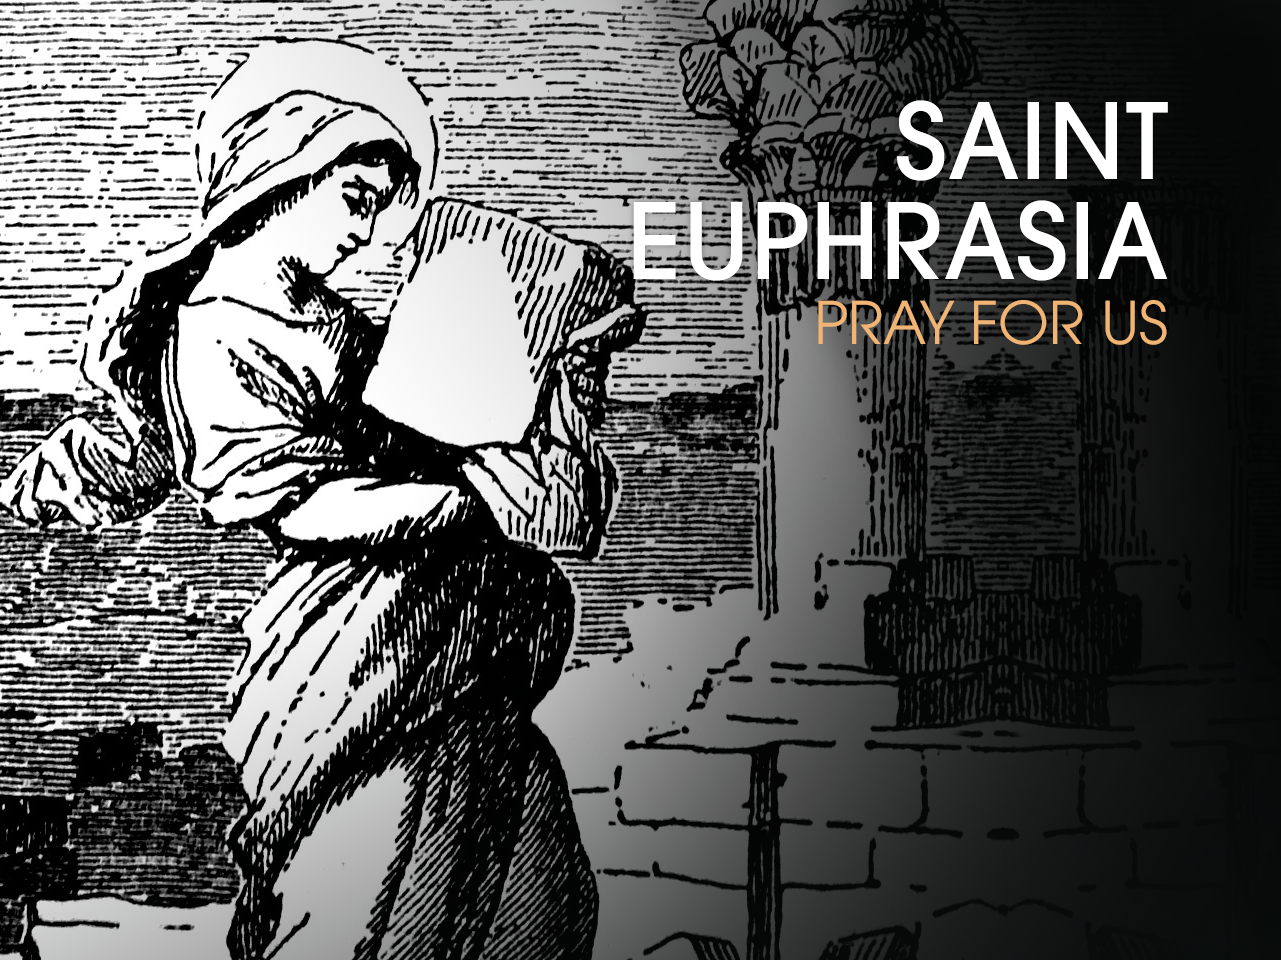 St. Euphrasia